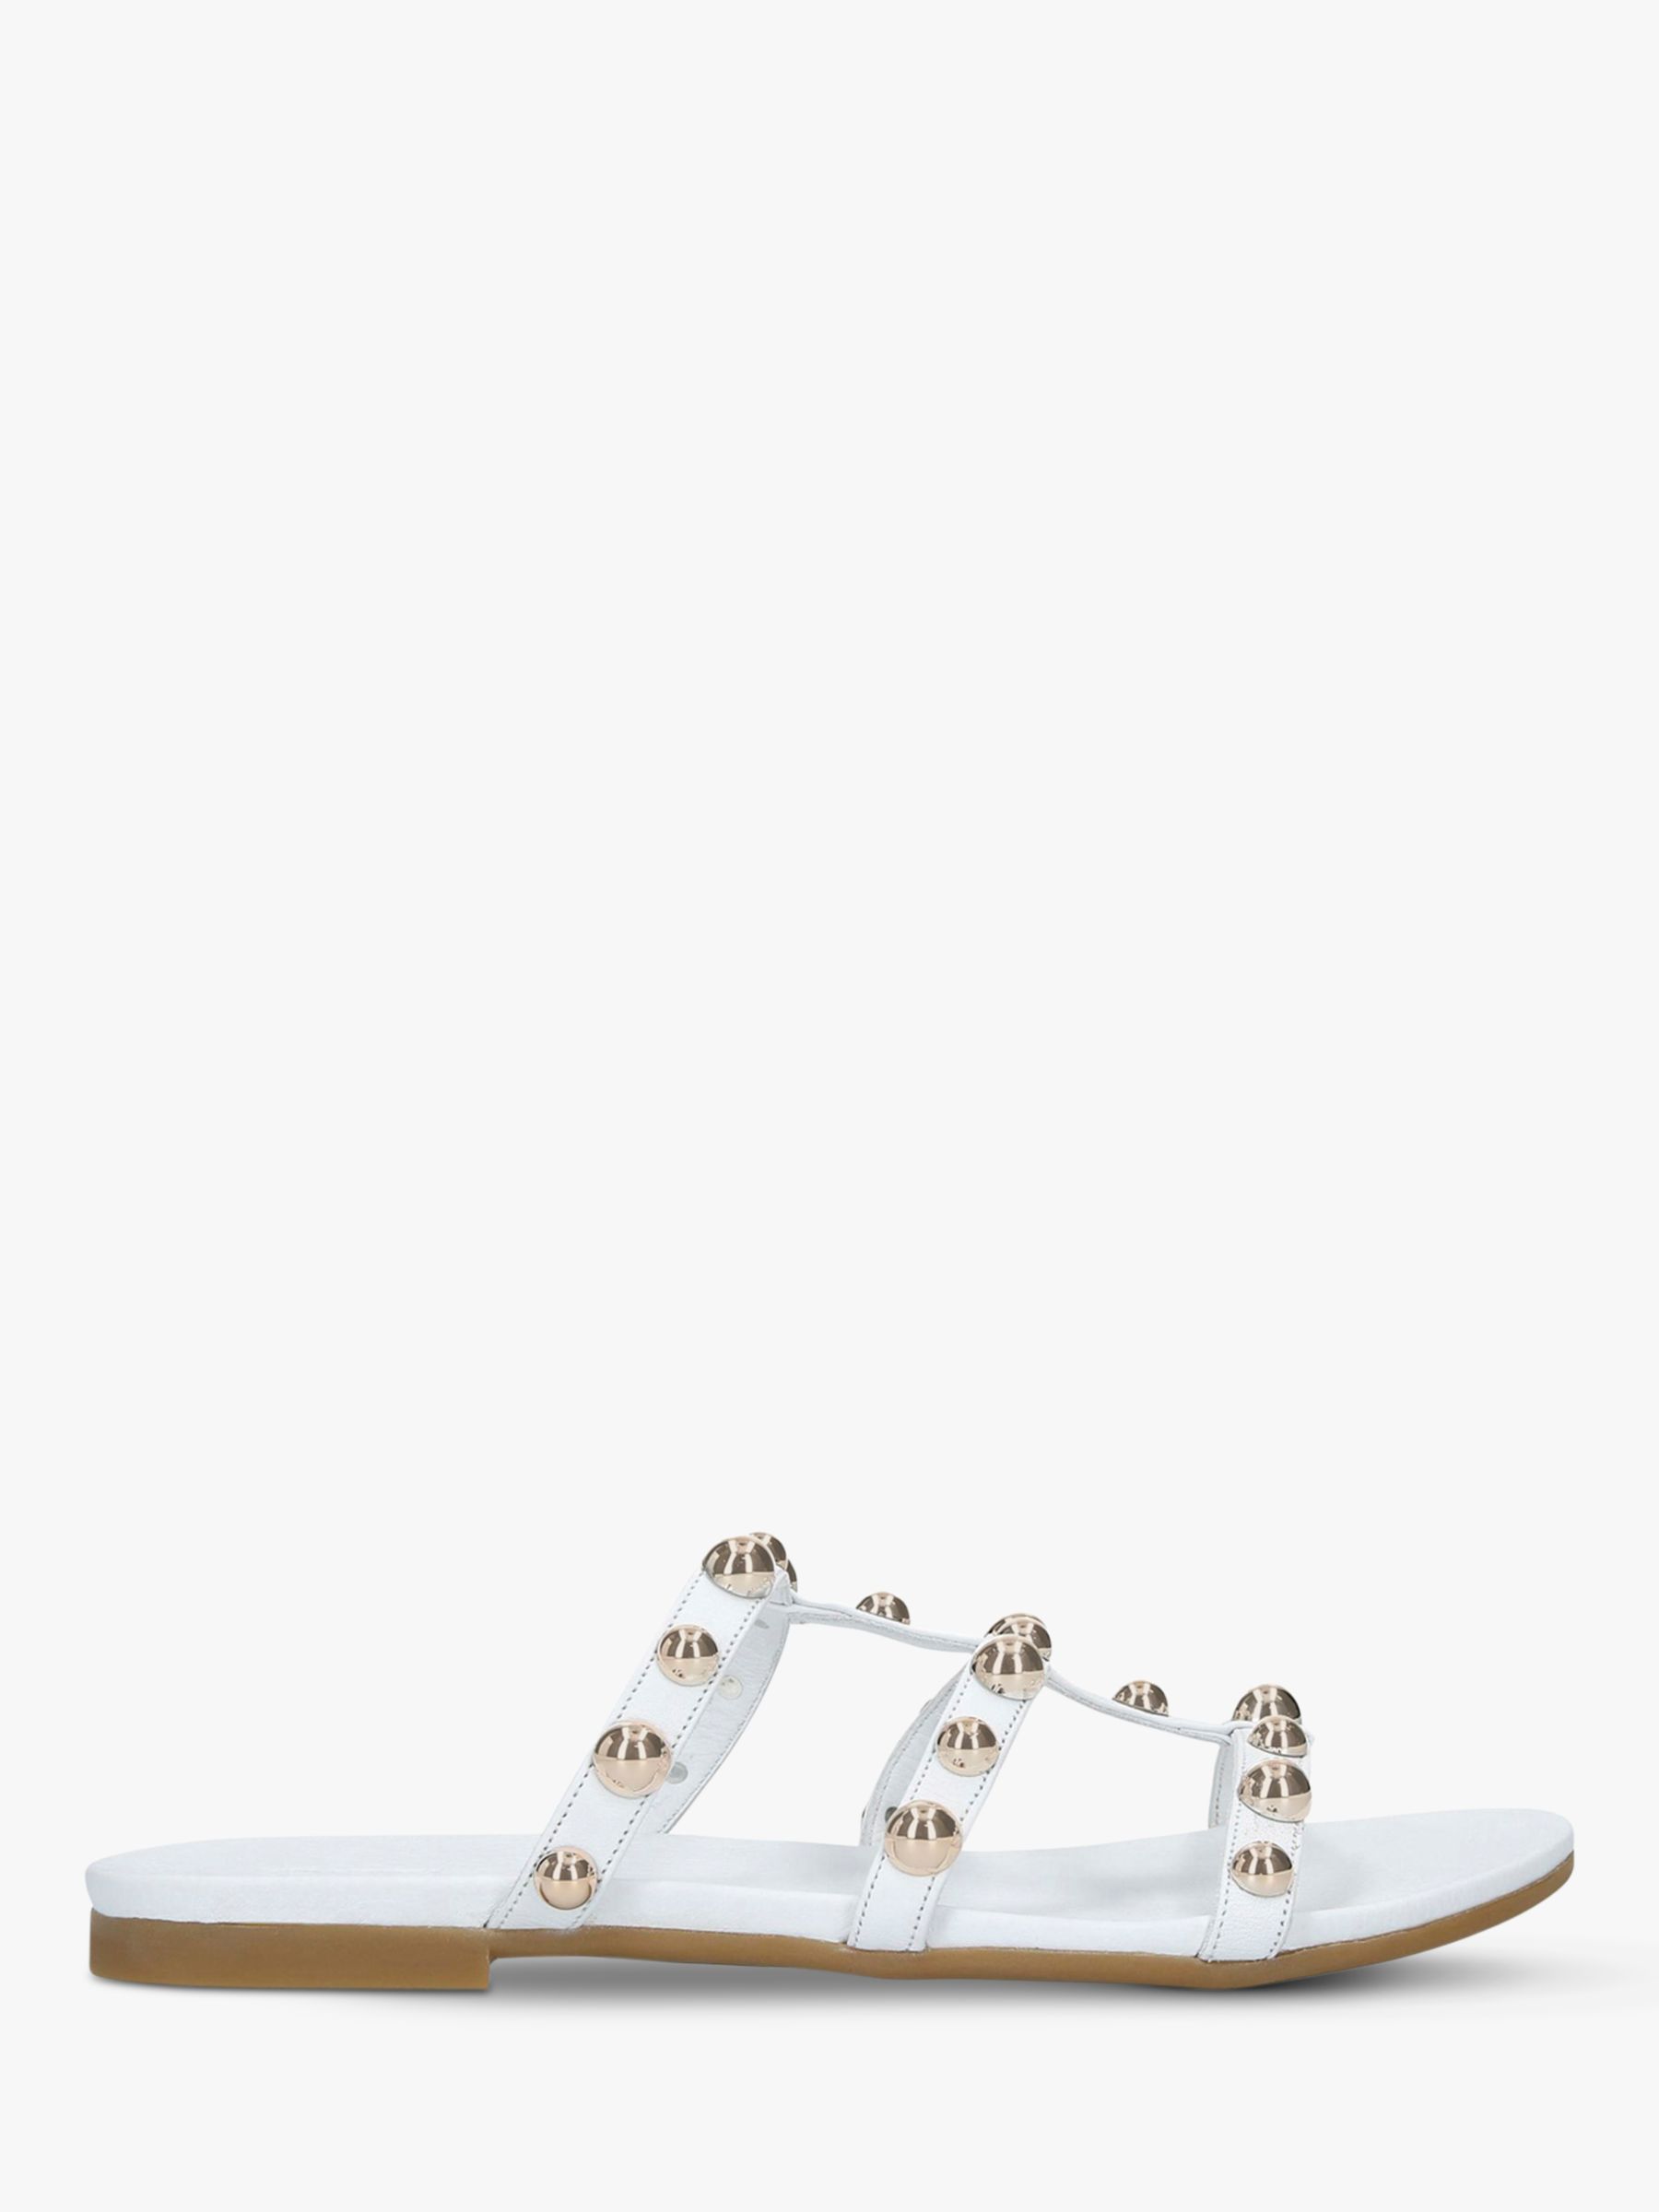 Carvela Kaddie Leather Embellished Flat Sandals, White